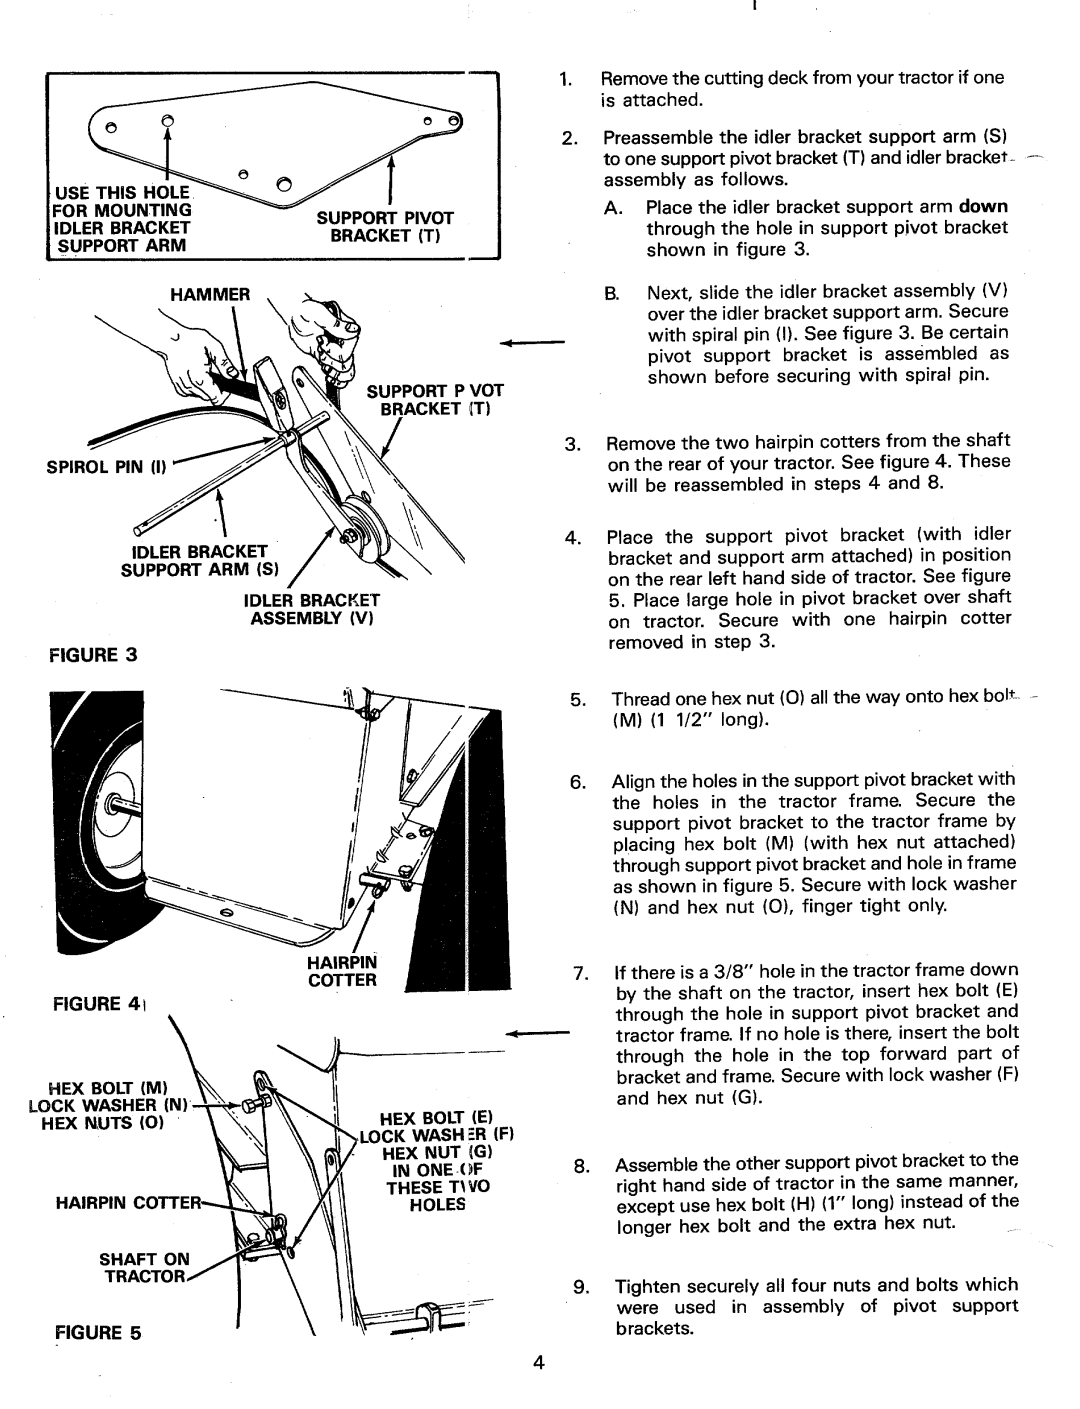 Bolens 190-746-000, TMO-33603B, 19746 manual 